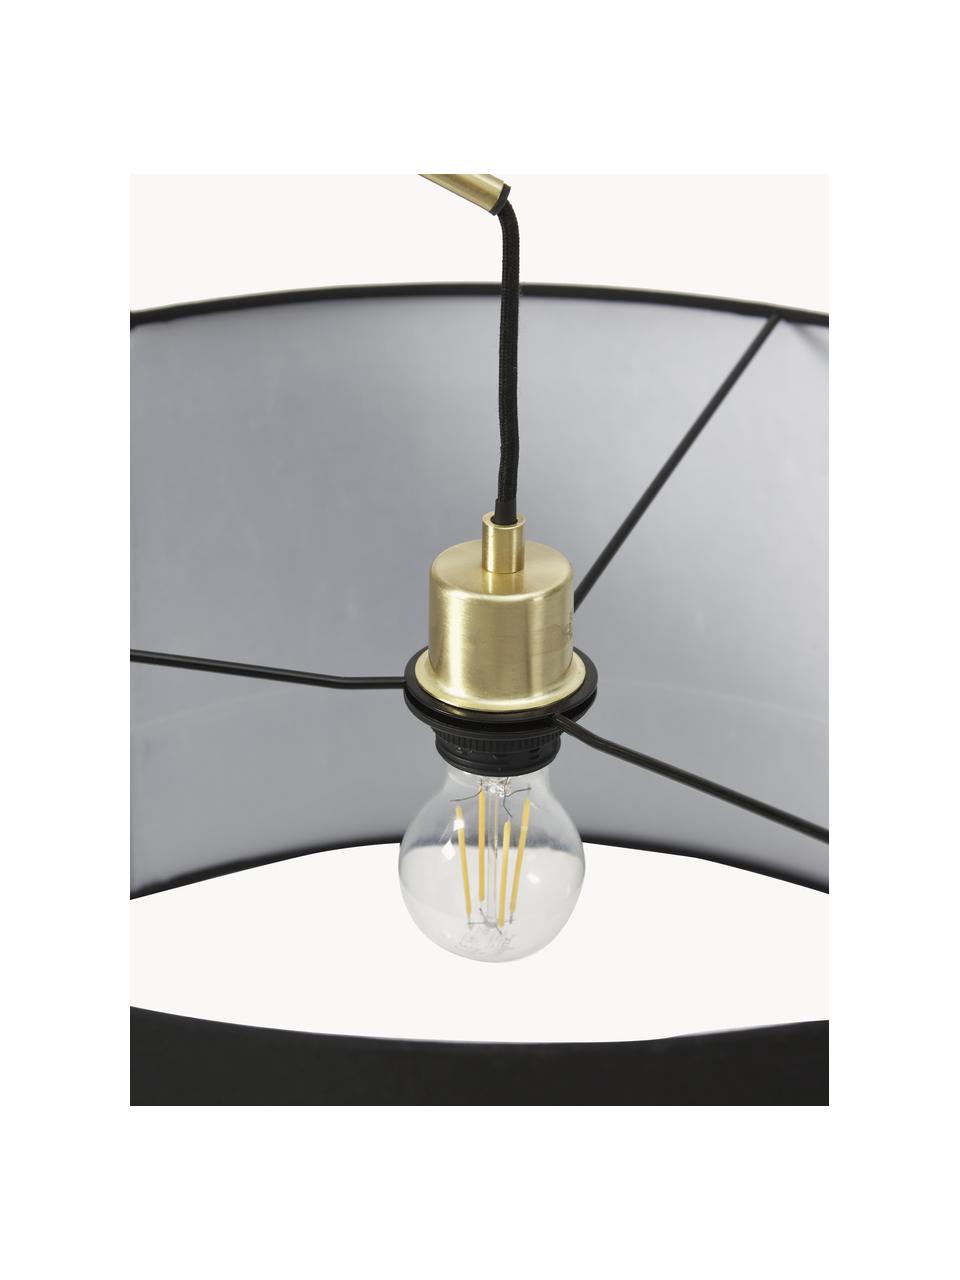 Grand lampadaire arc moderne laiton-noir Niels, Couleur laitonnée, noir, haut. 218 cm